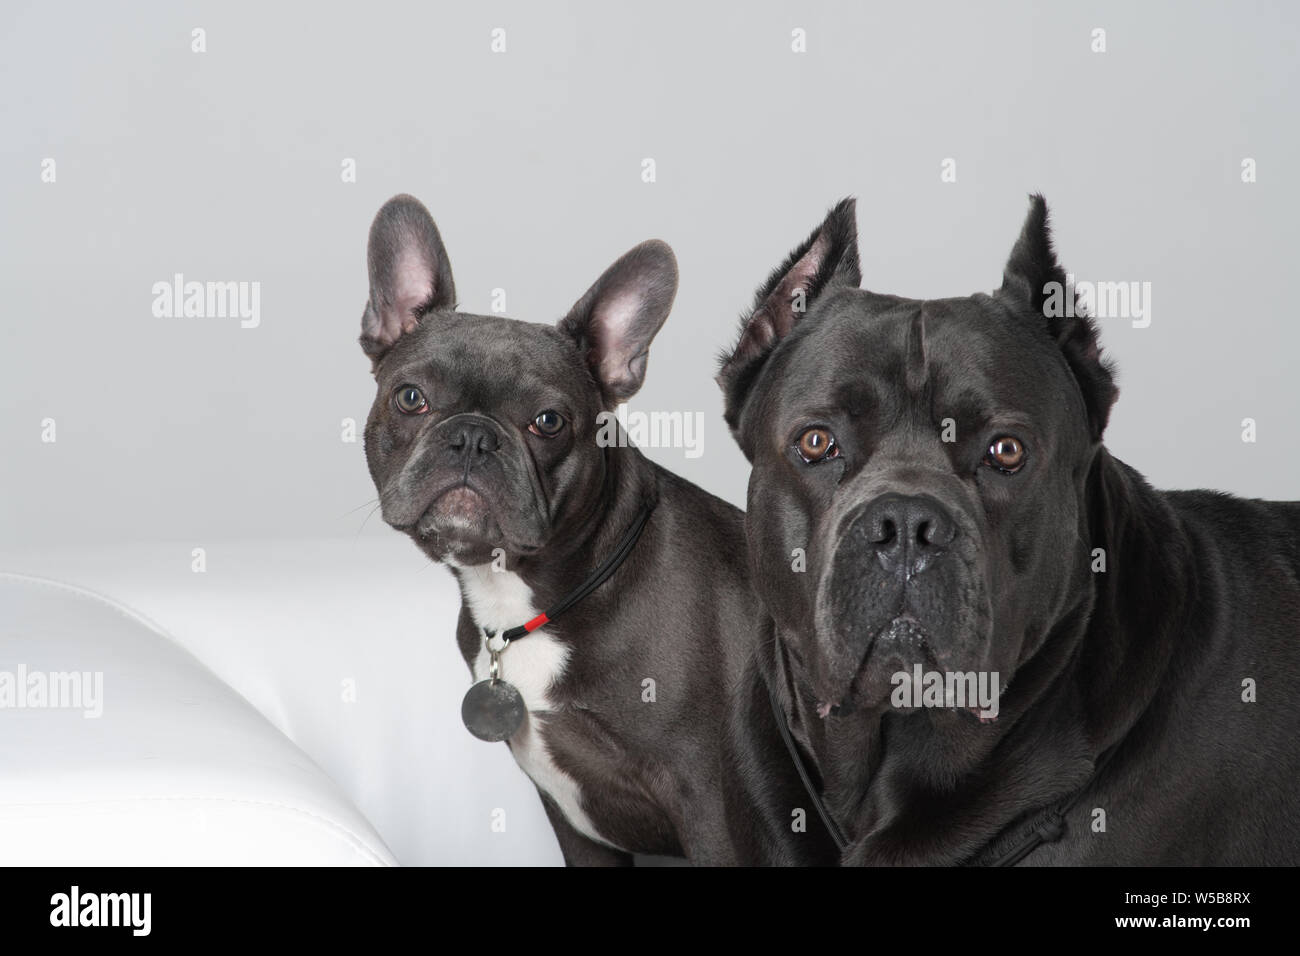 Cane corso italiano and french bulldog friends at studio portrait Stock Photo